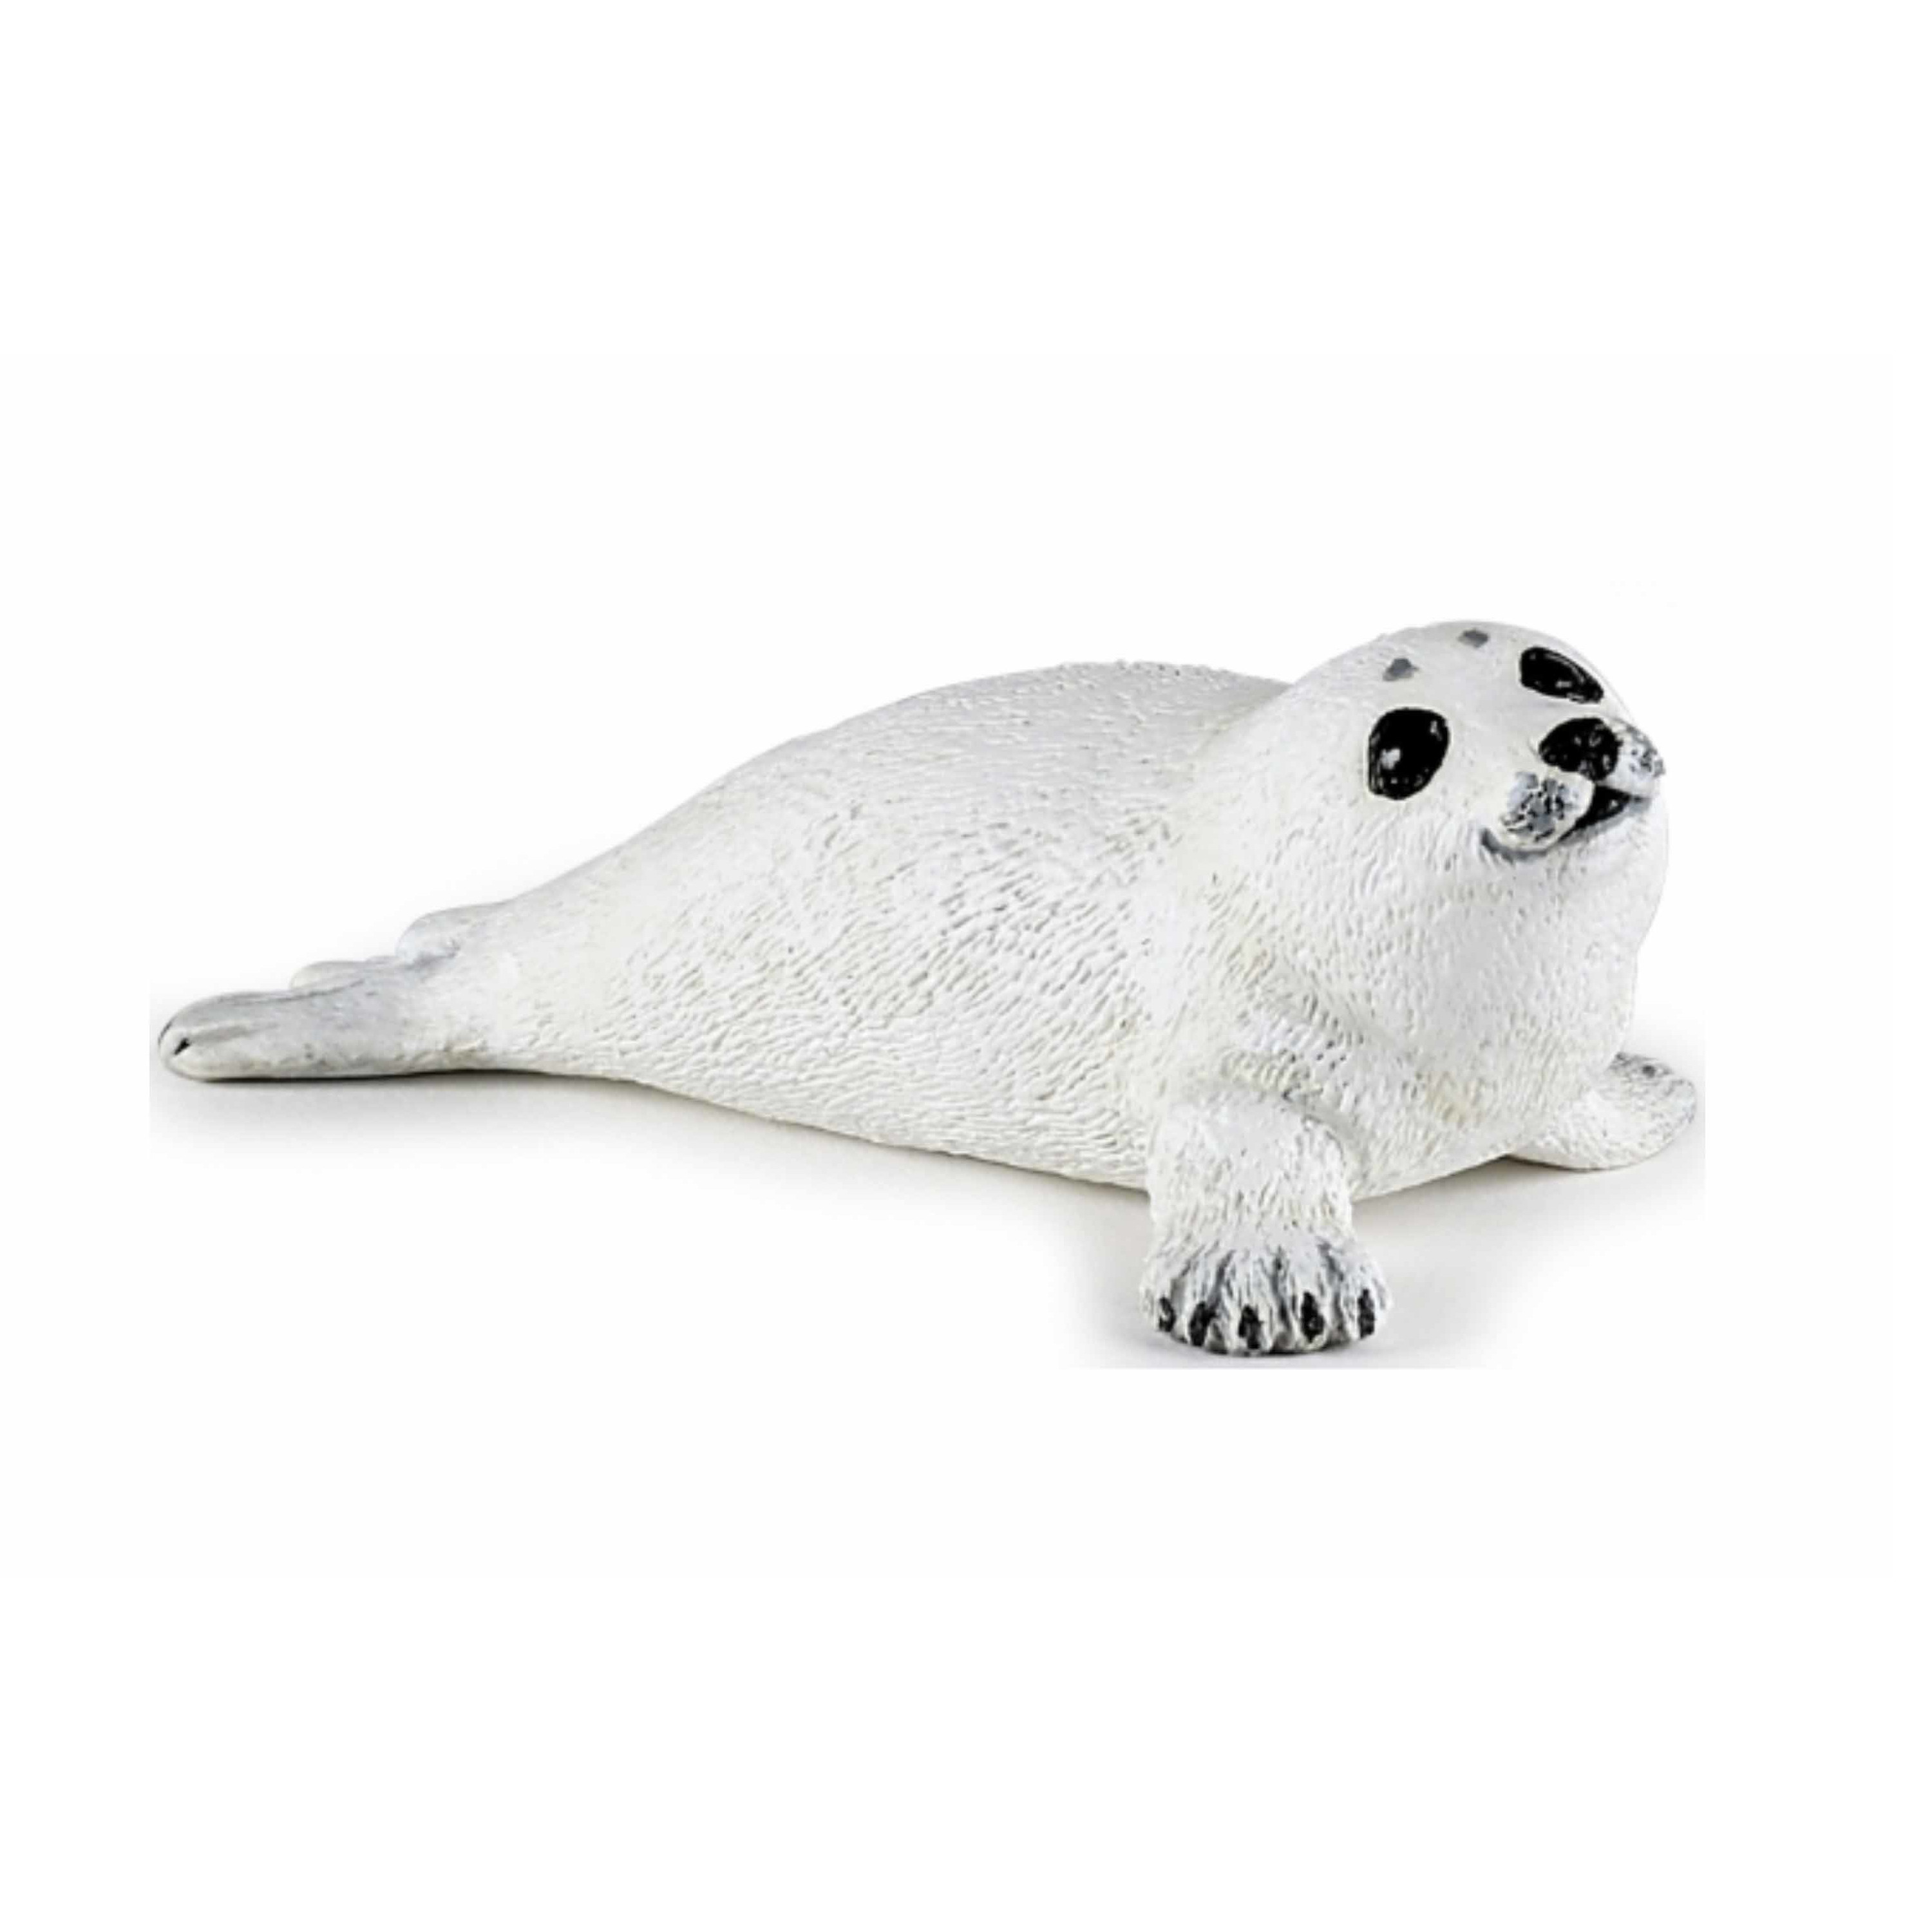 Plastic speelgoed figuur liggende zeehond pup 8 cm